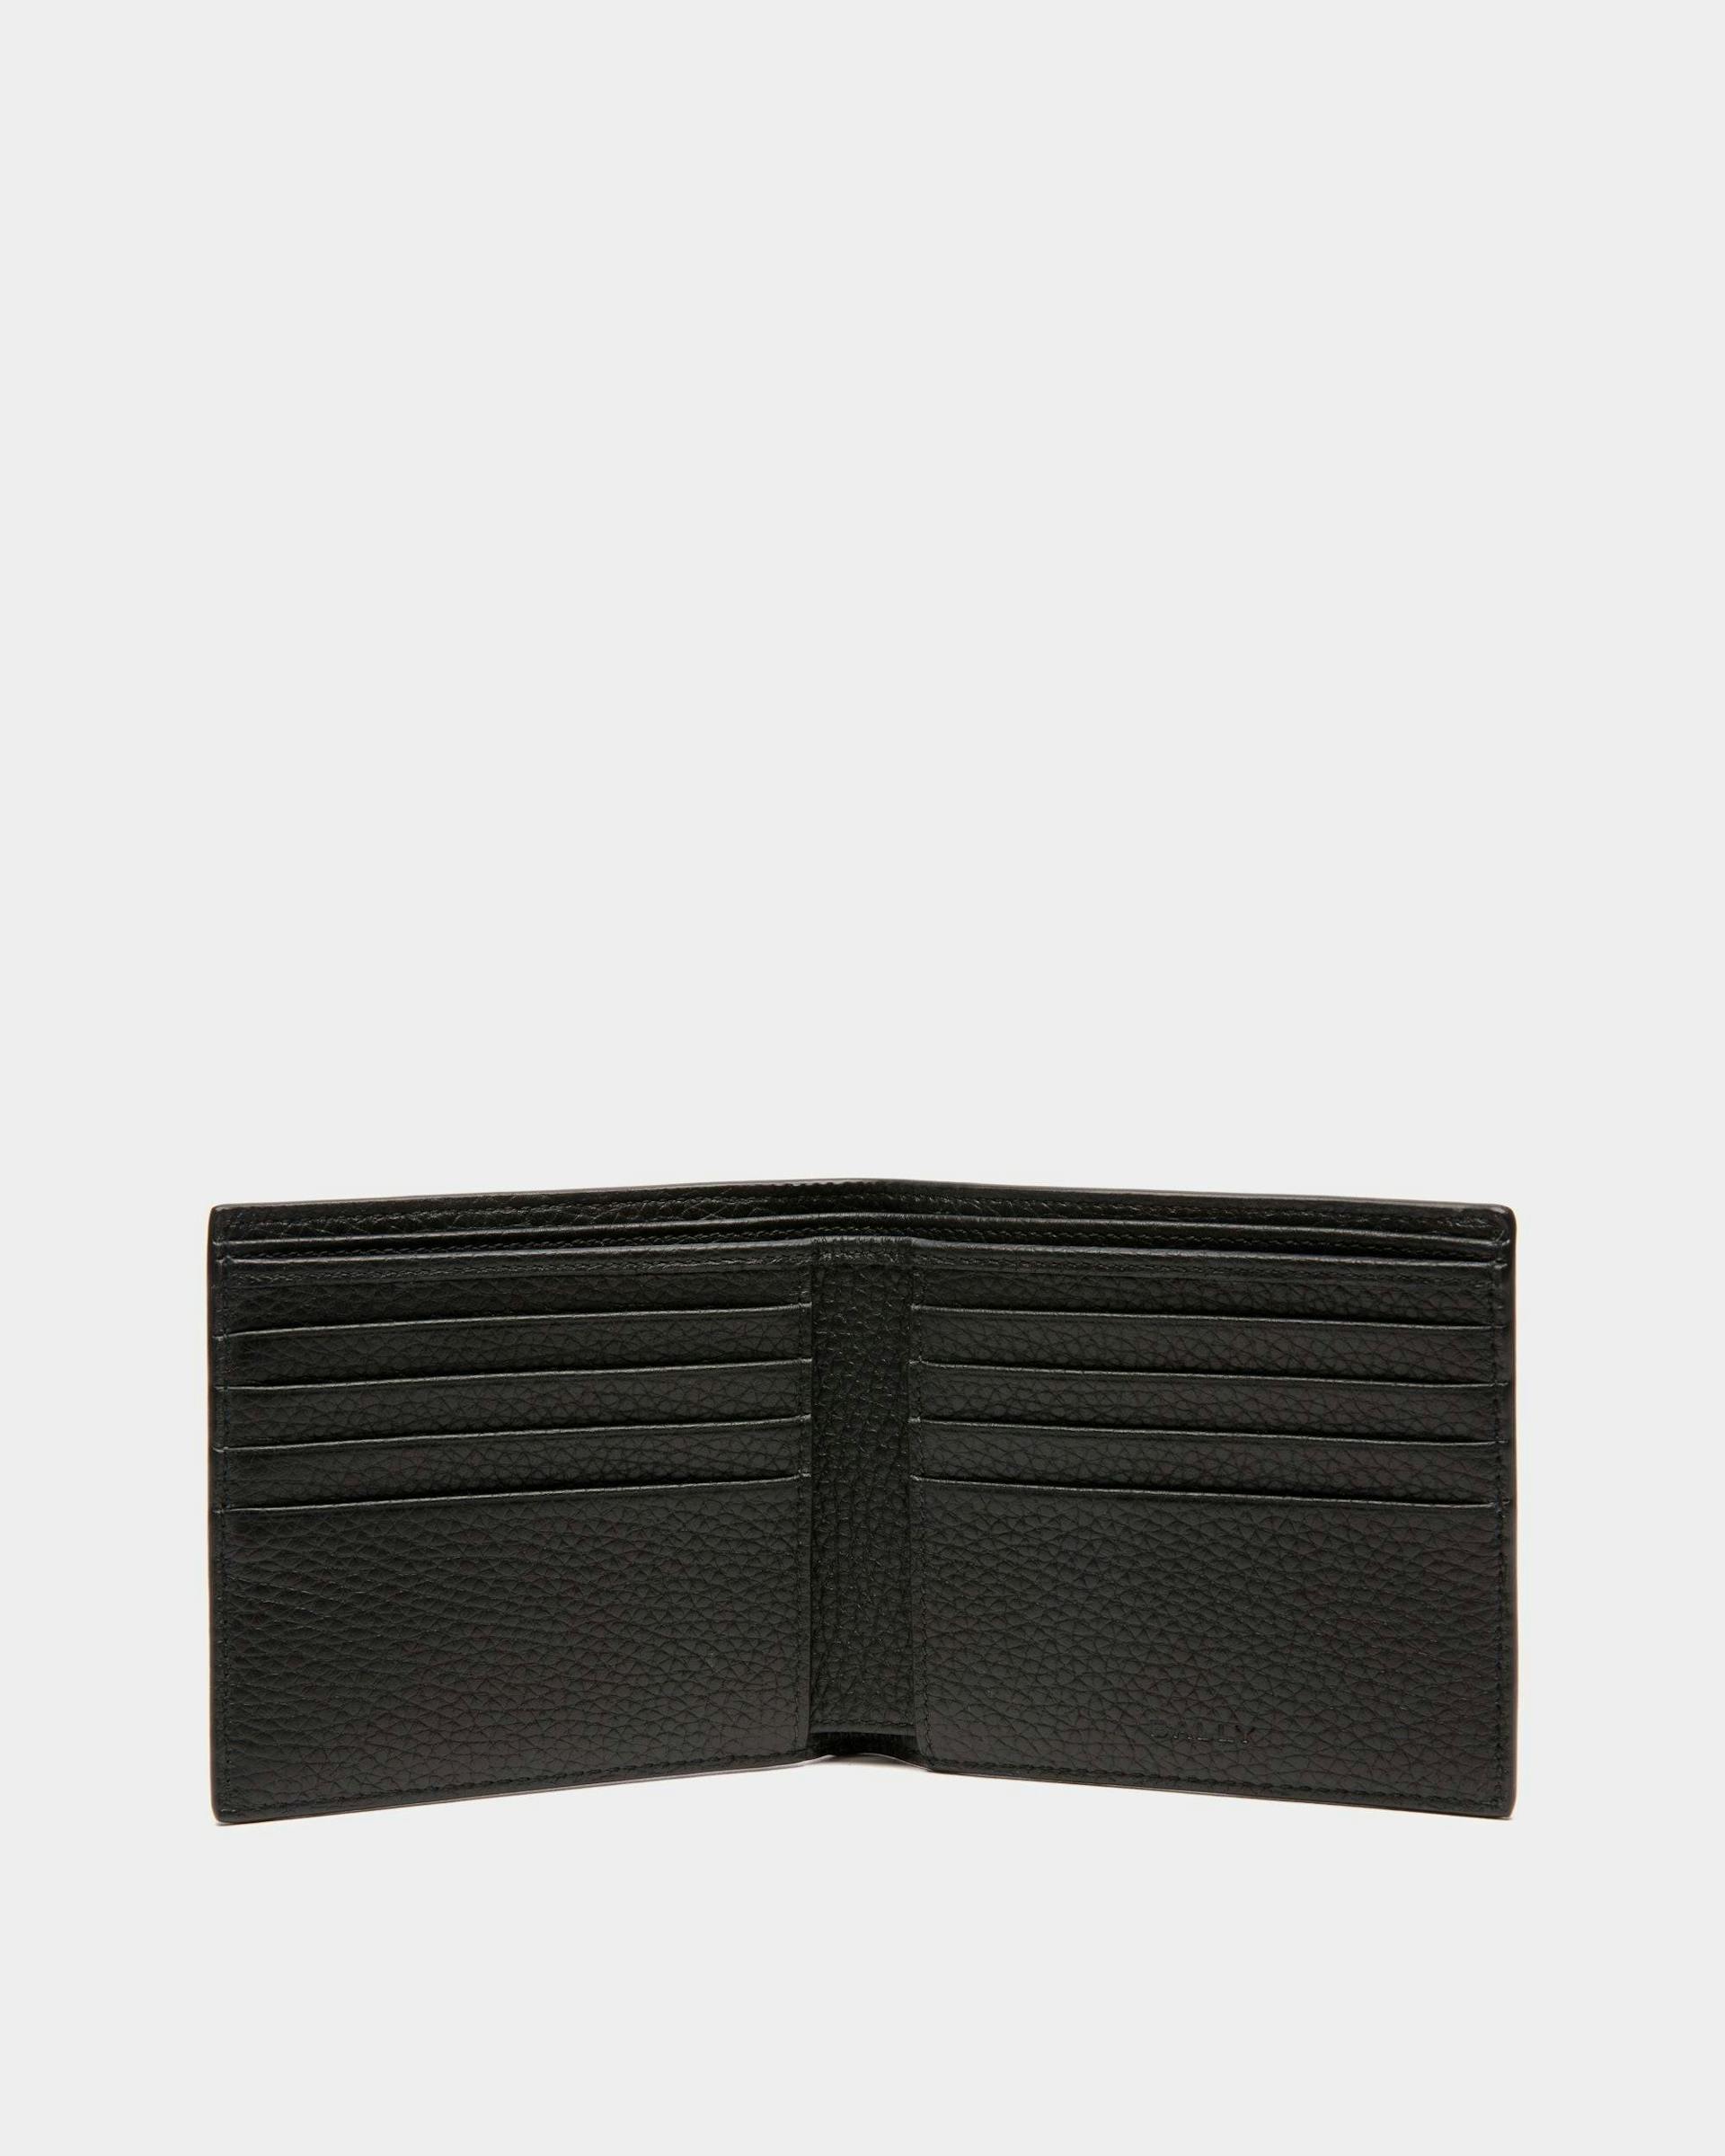 Men's Ribbon Bifold Wallet In Black Grained Leather | Bally | Still Life Open / Inside